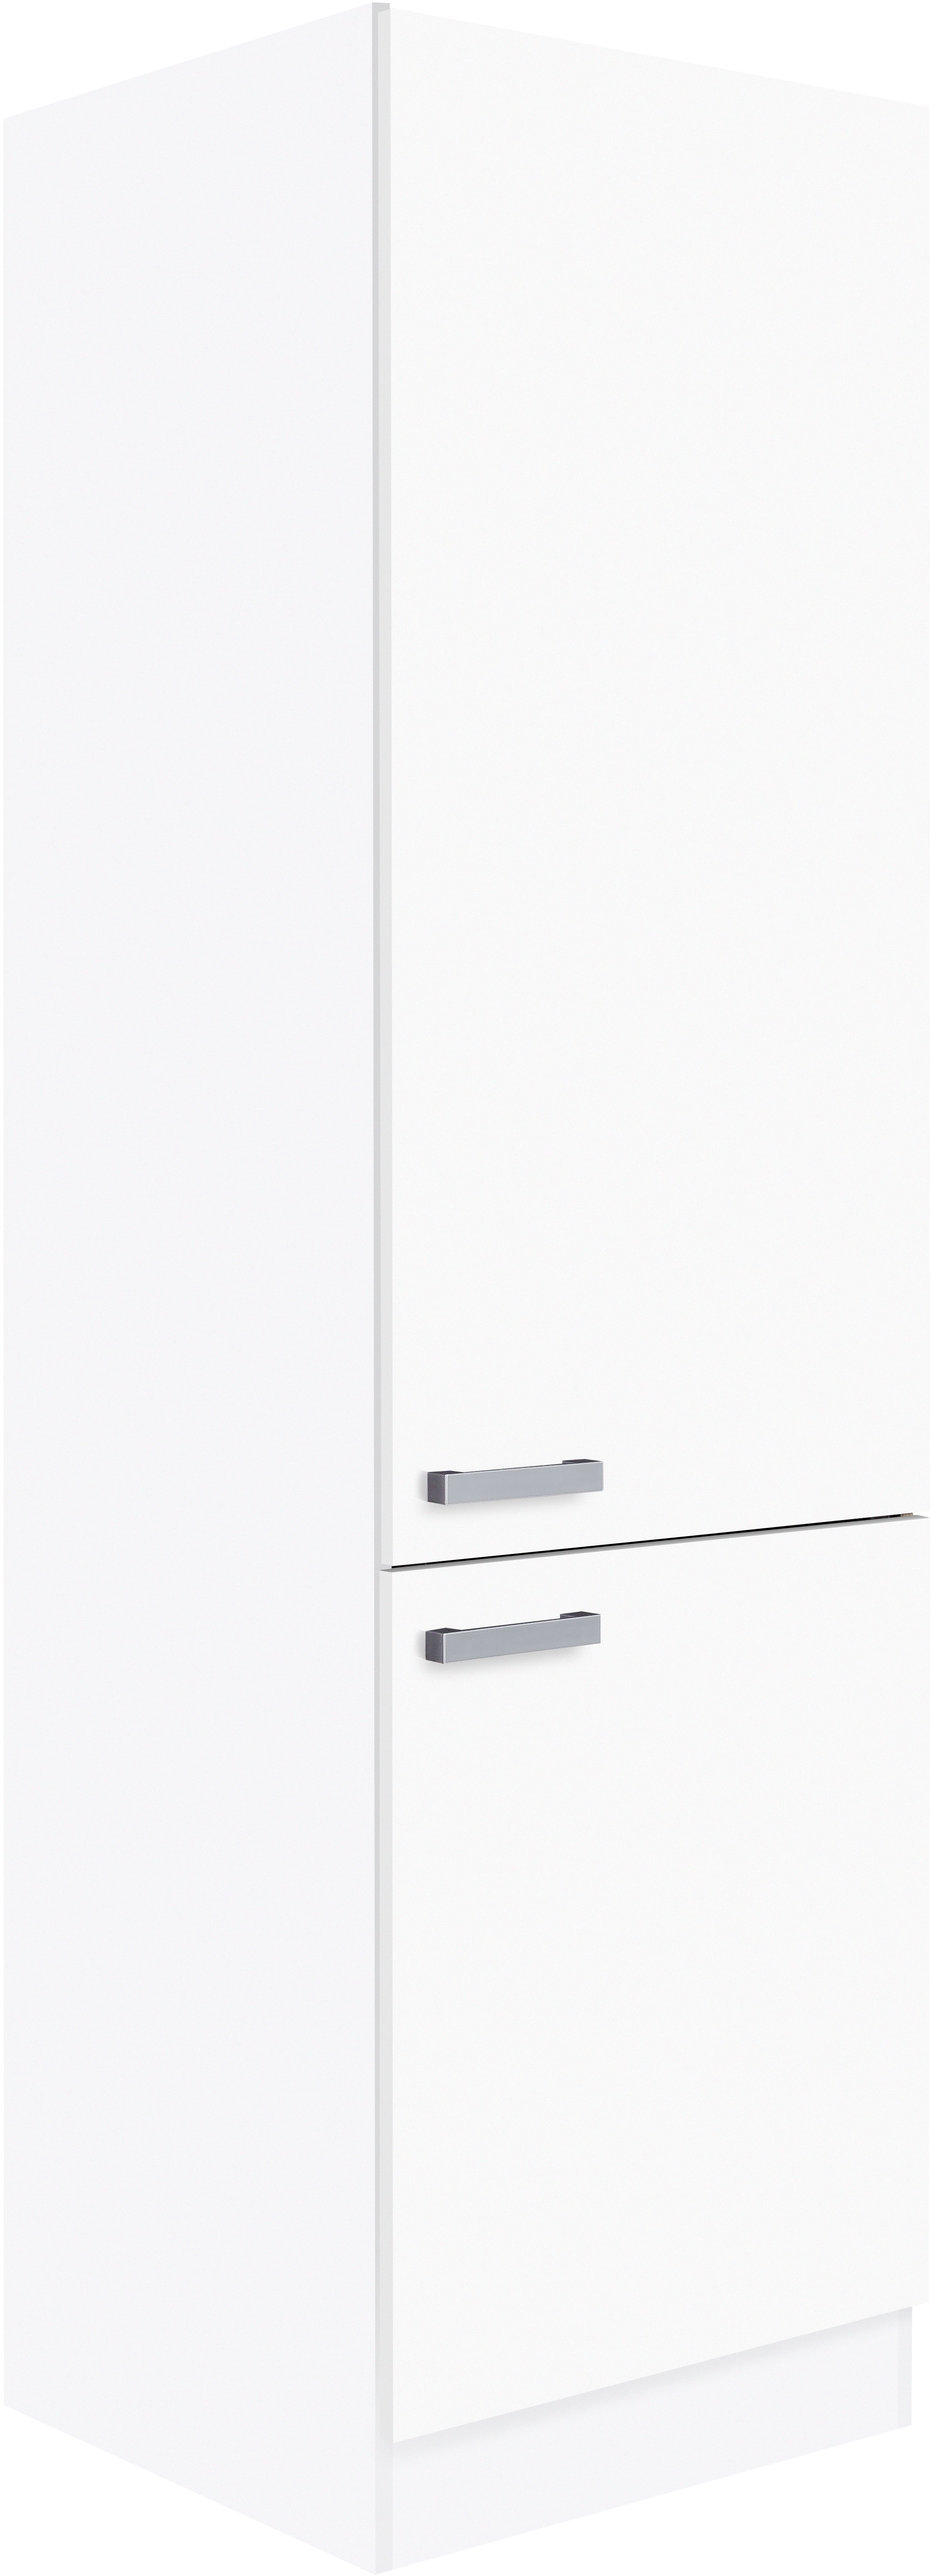 Optifit Hochschrank Salo214 60 cm Wäschesortierung Weiß kaufen bei OBI